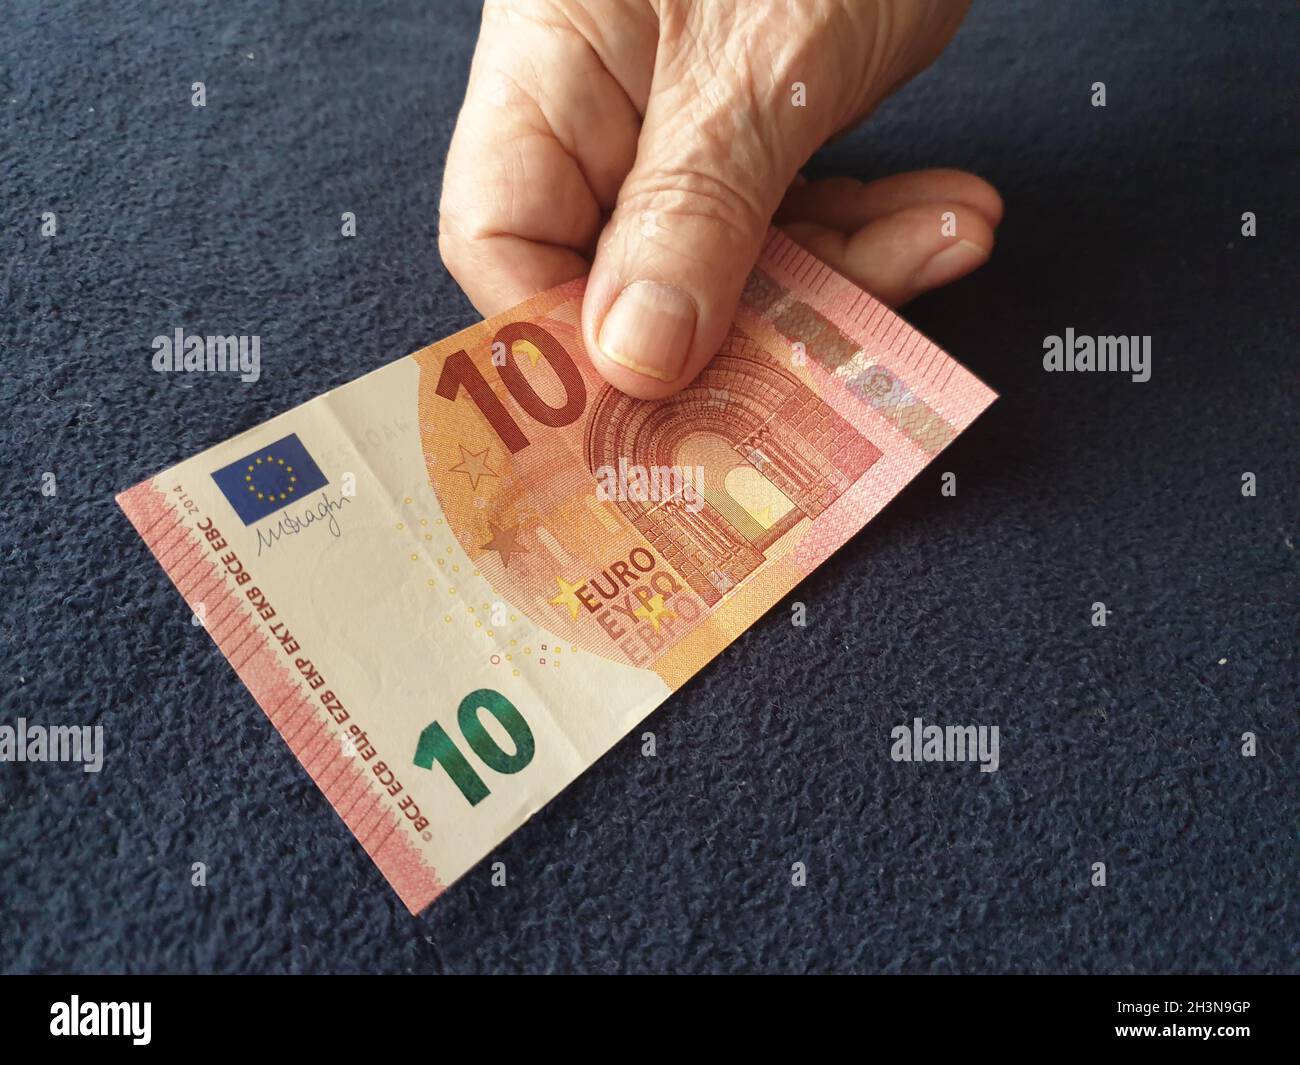 Alter Mann bezahlt mit 10 Euro-Schein Stock Photo